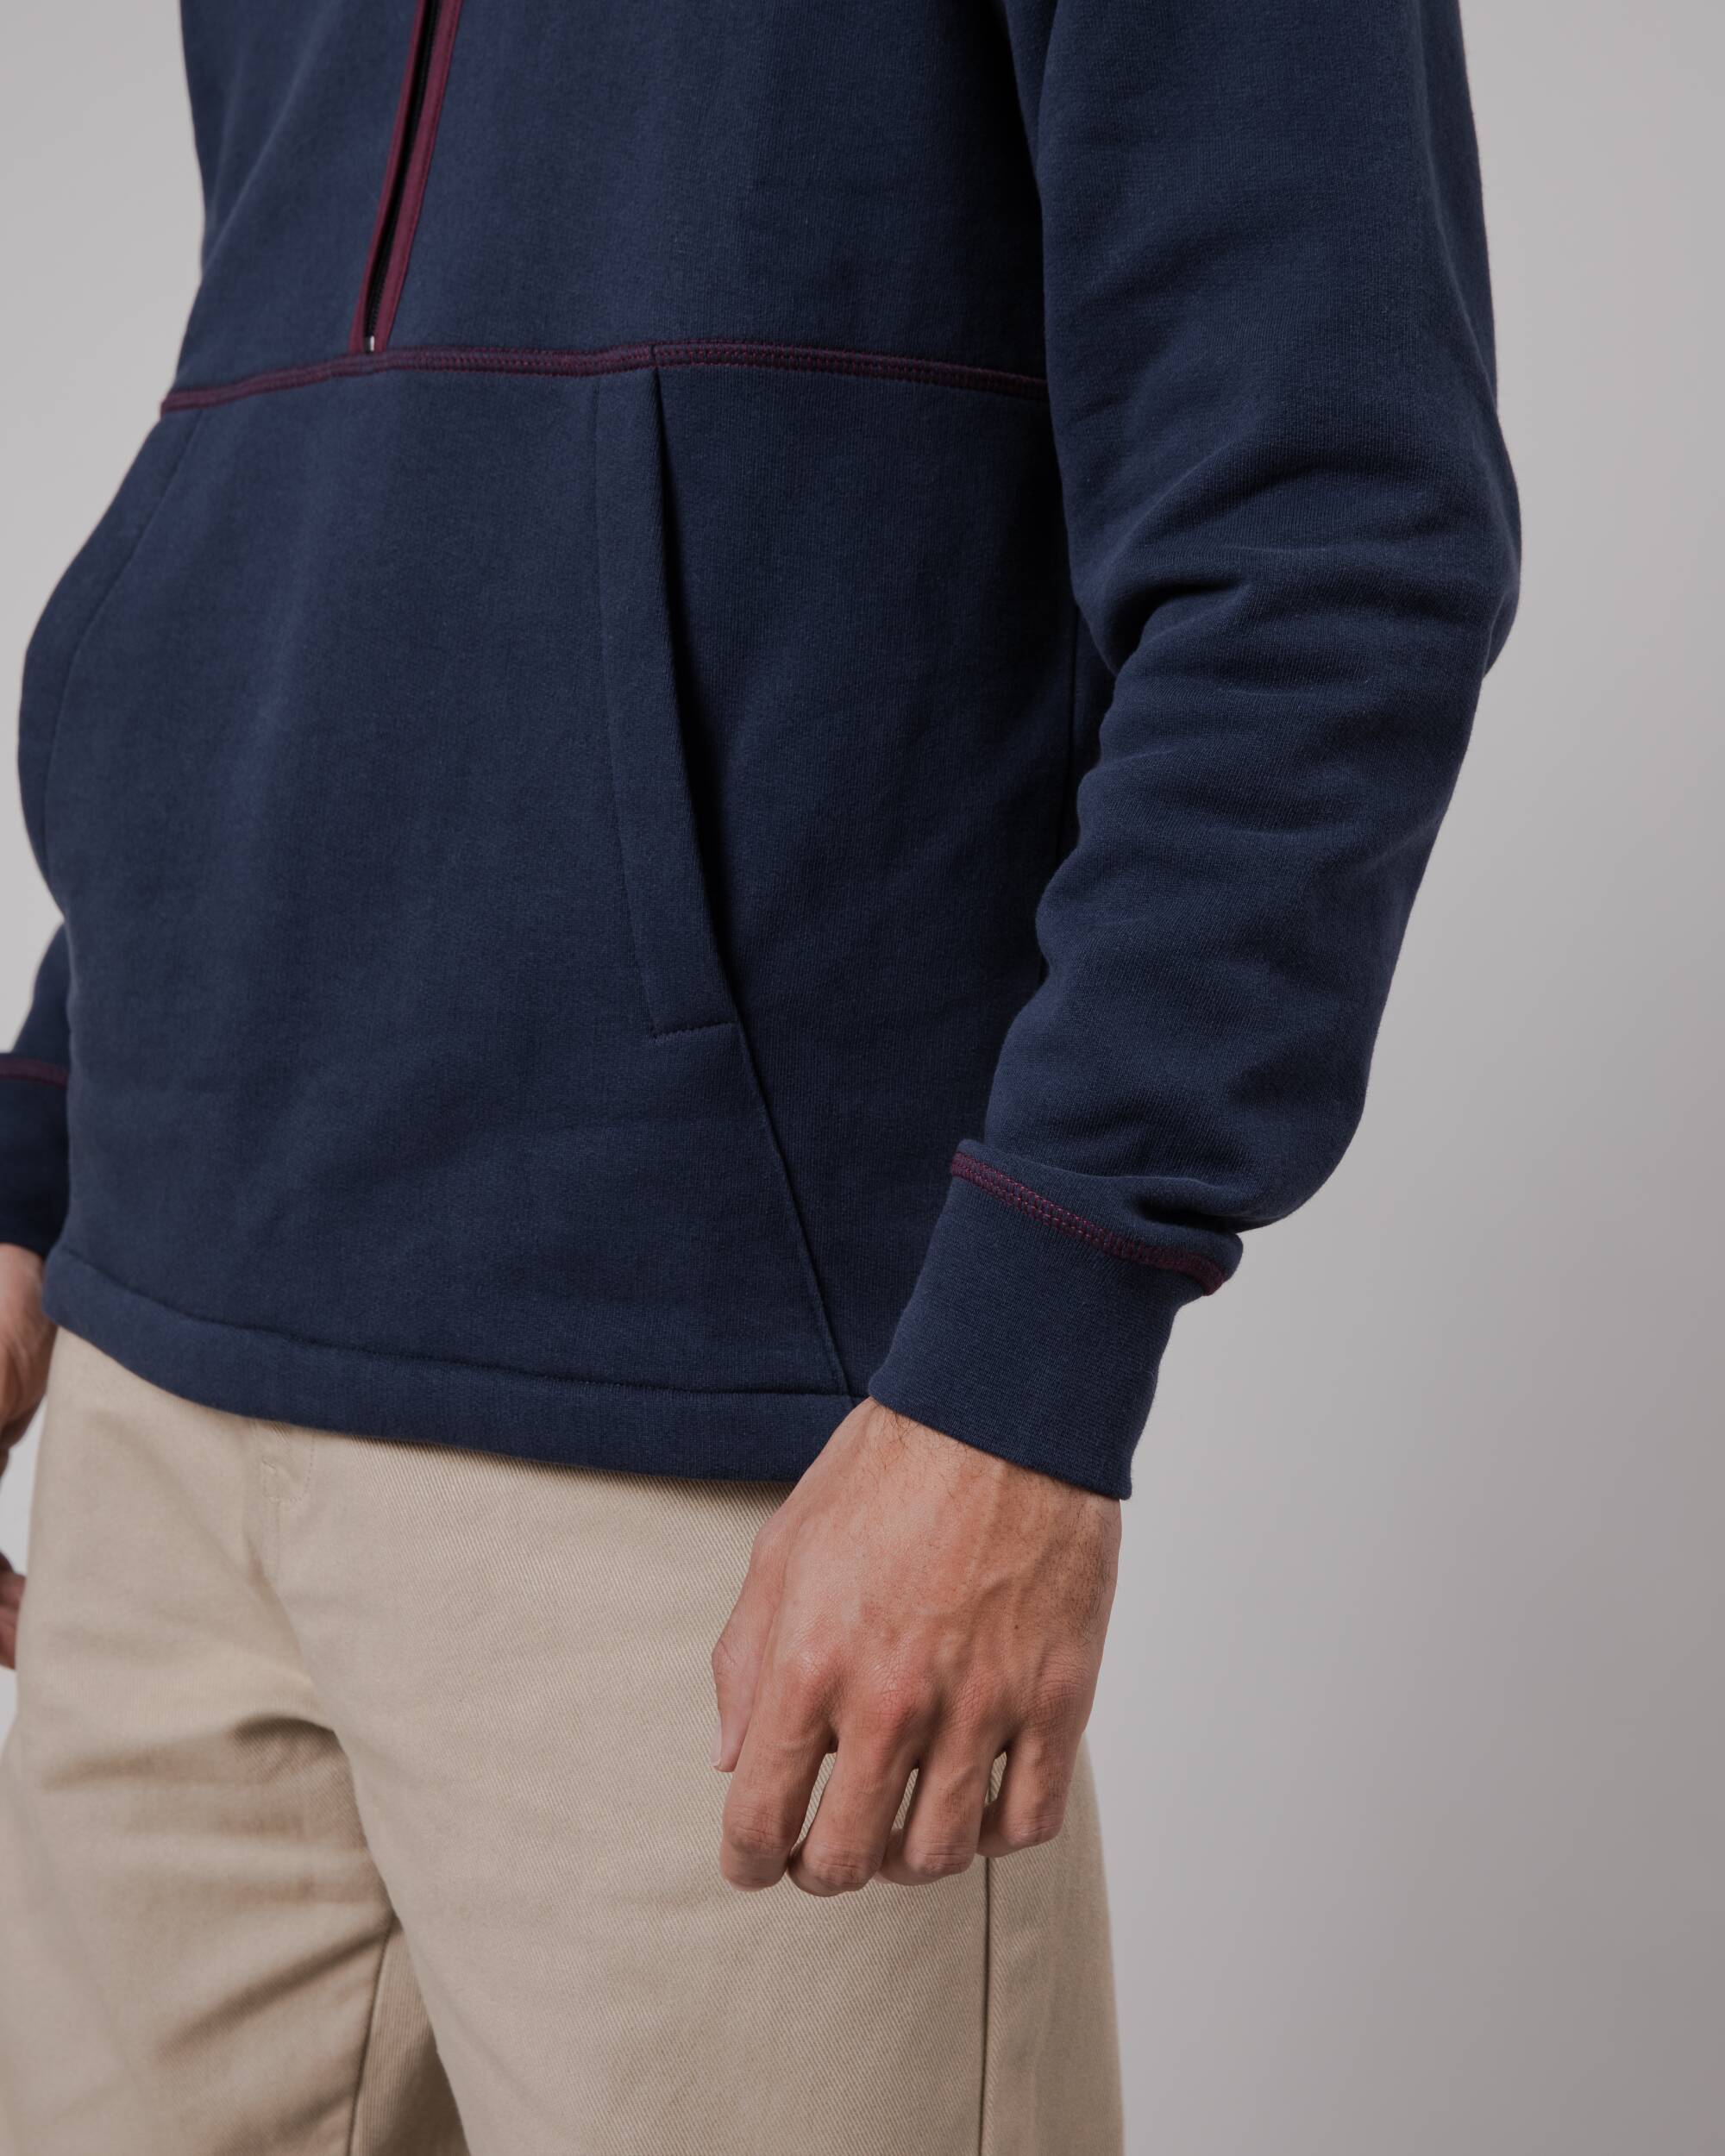 Navyblauer Pullover Zip Up aus Bio-Baumwolle von Brava Fabrics